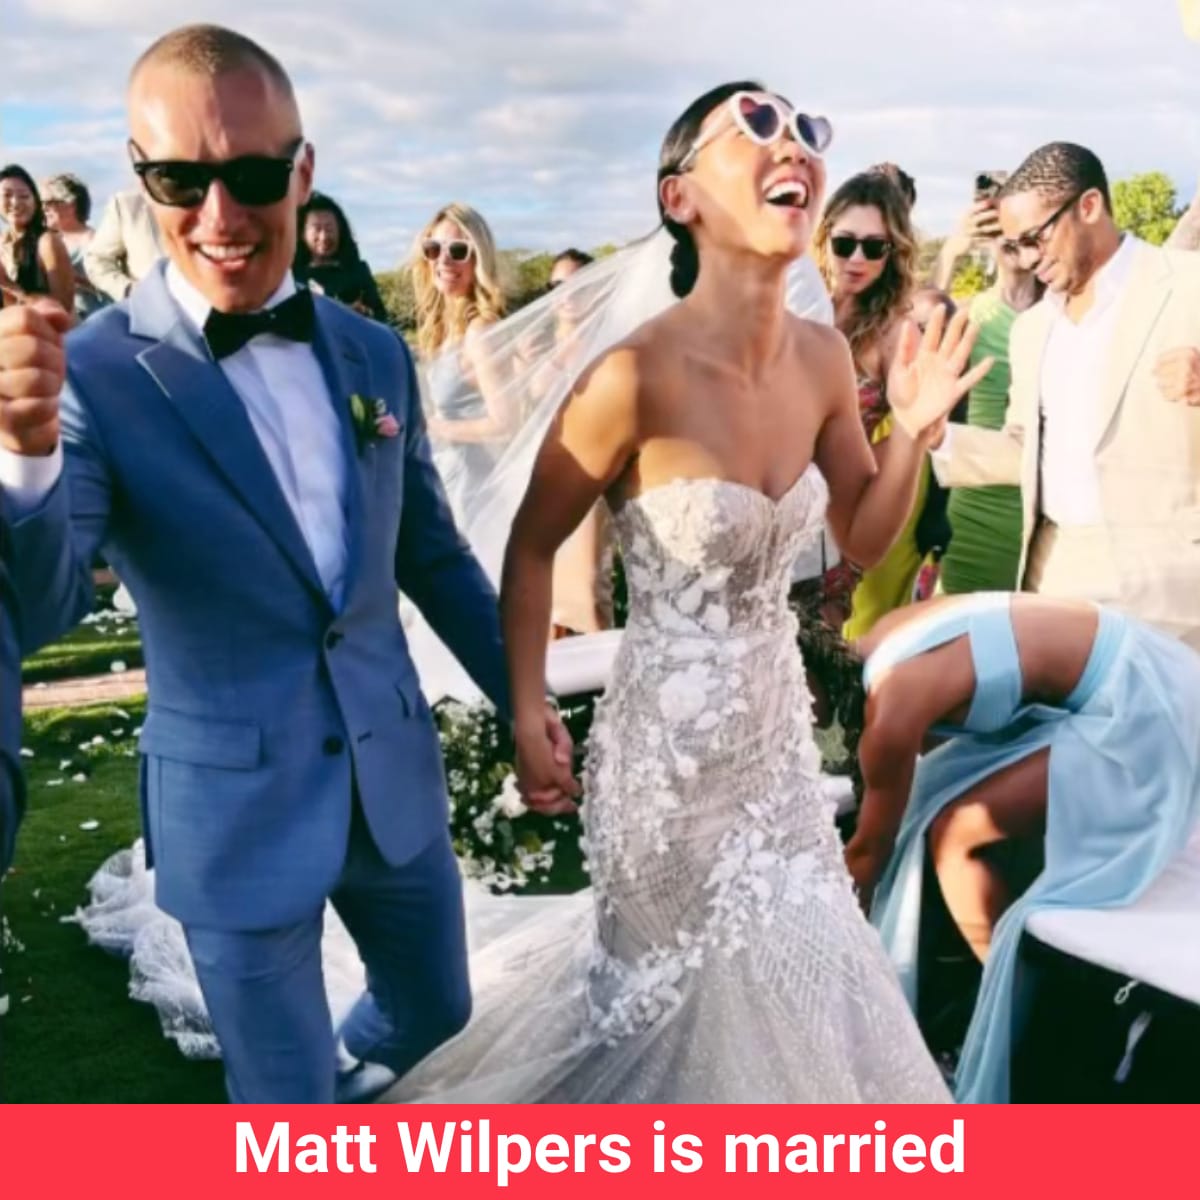 Peloton Instructor Matt Wilpers is Married! - Peloton Buddy